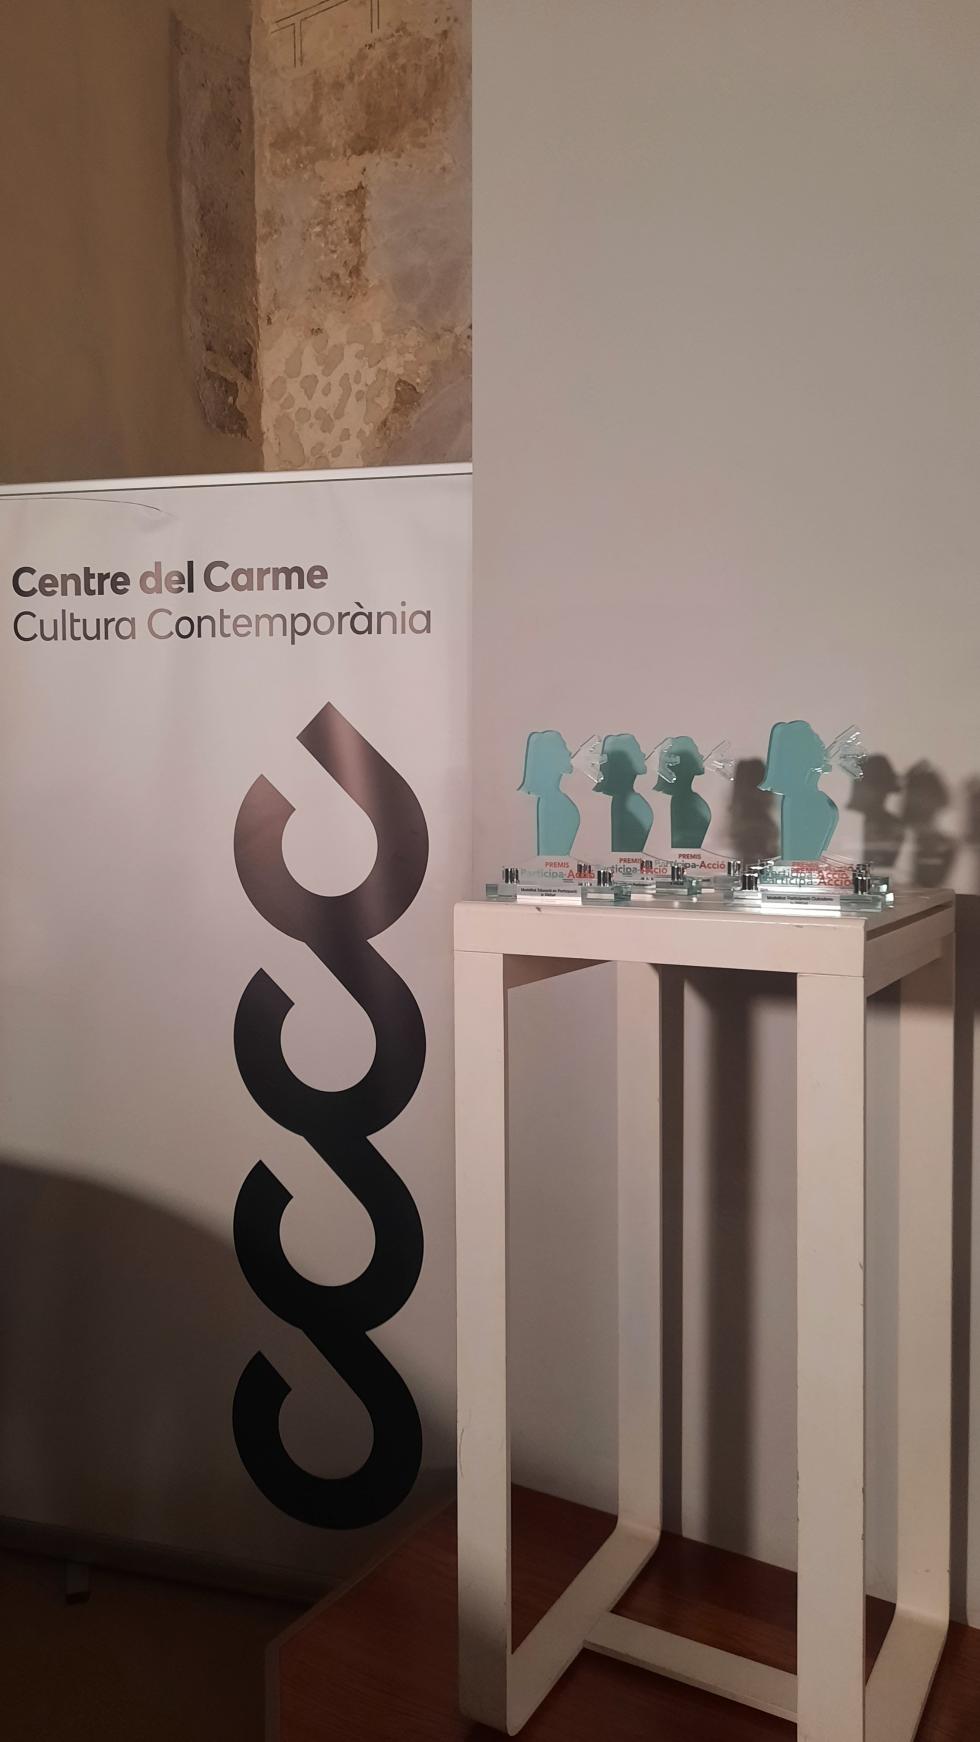 La Generalitat convoca los Premios Participa-Acció para destacar proyectos de participación ciudadana y fomento del asociacionismo